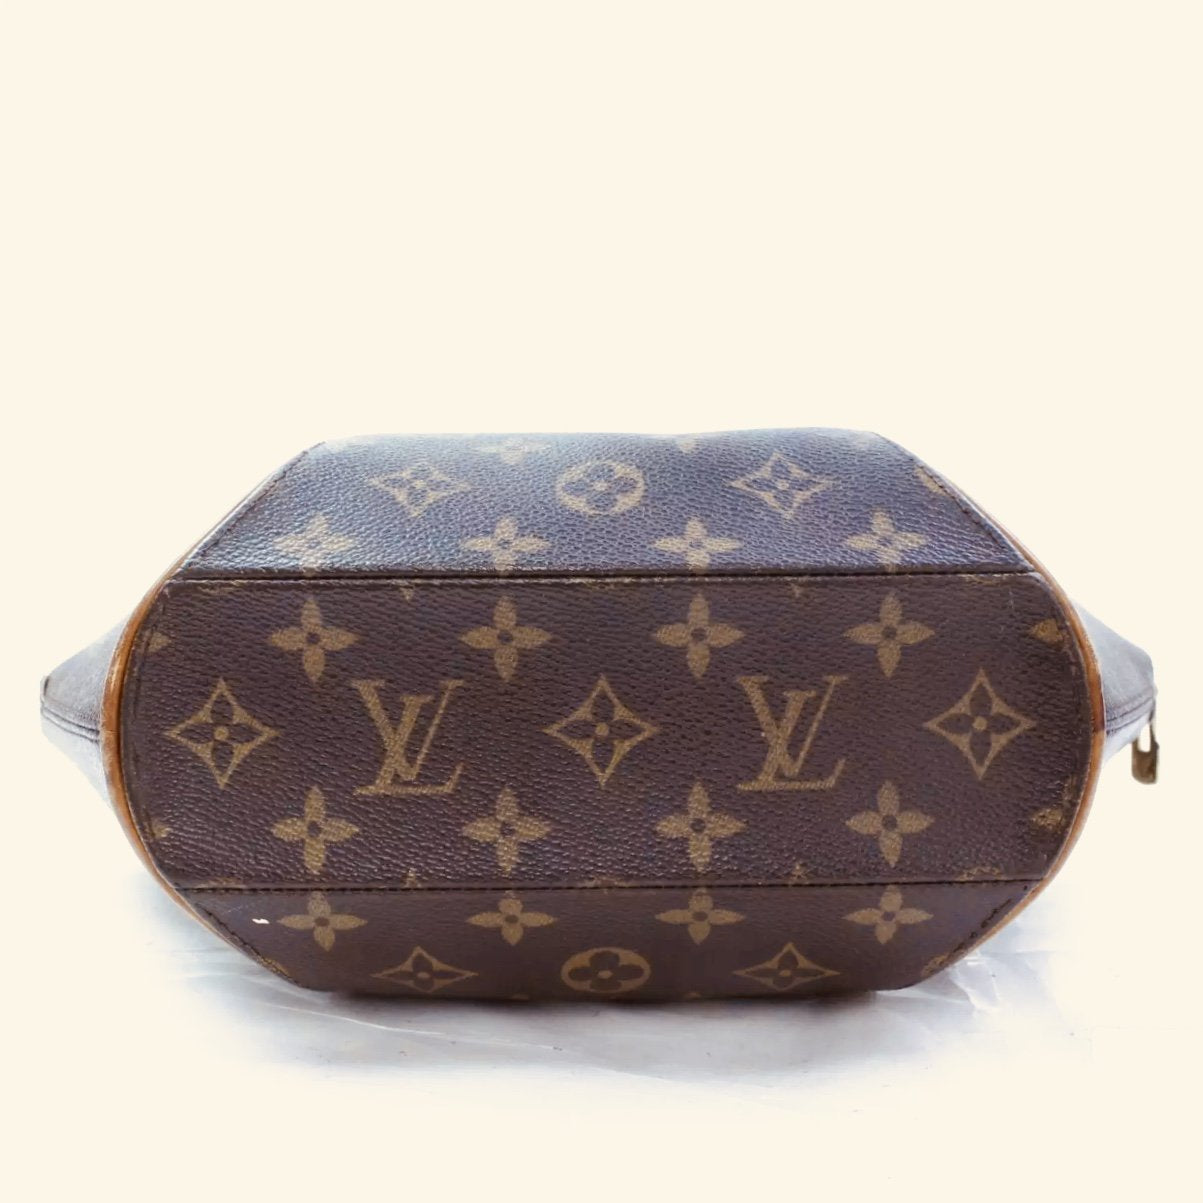 Authentic Deadstock Louis Vuitton Ellipse PM Leather Handbag Monogram Purse  Rare